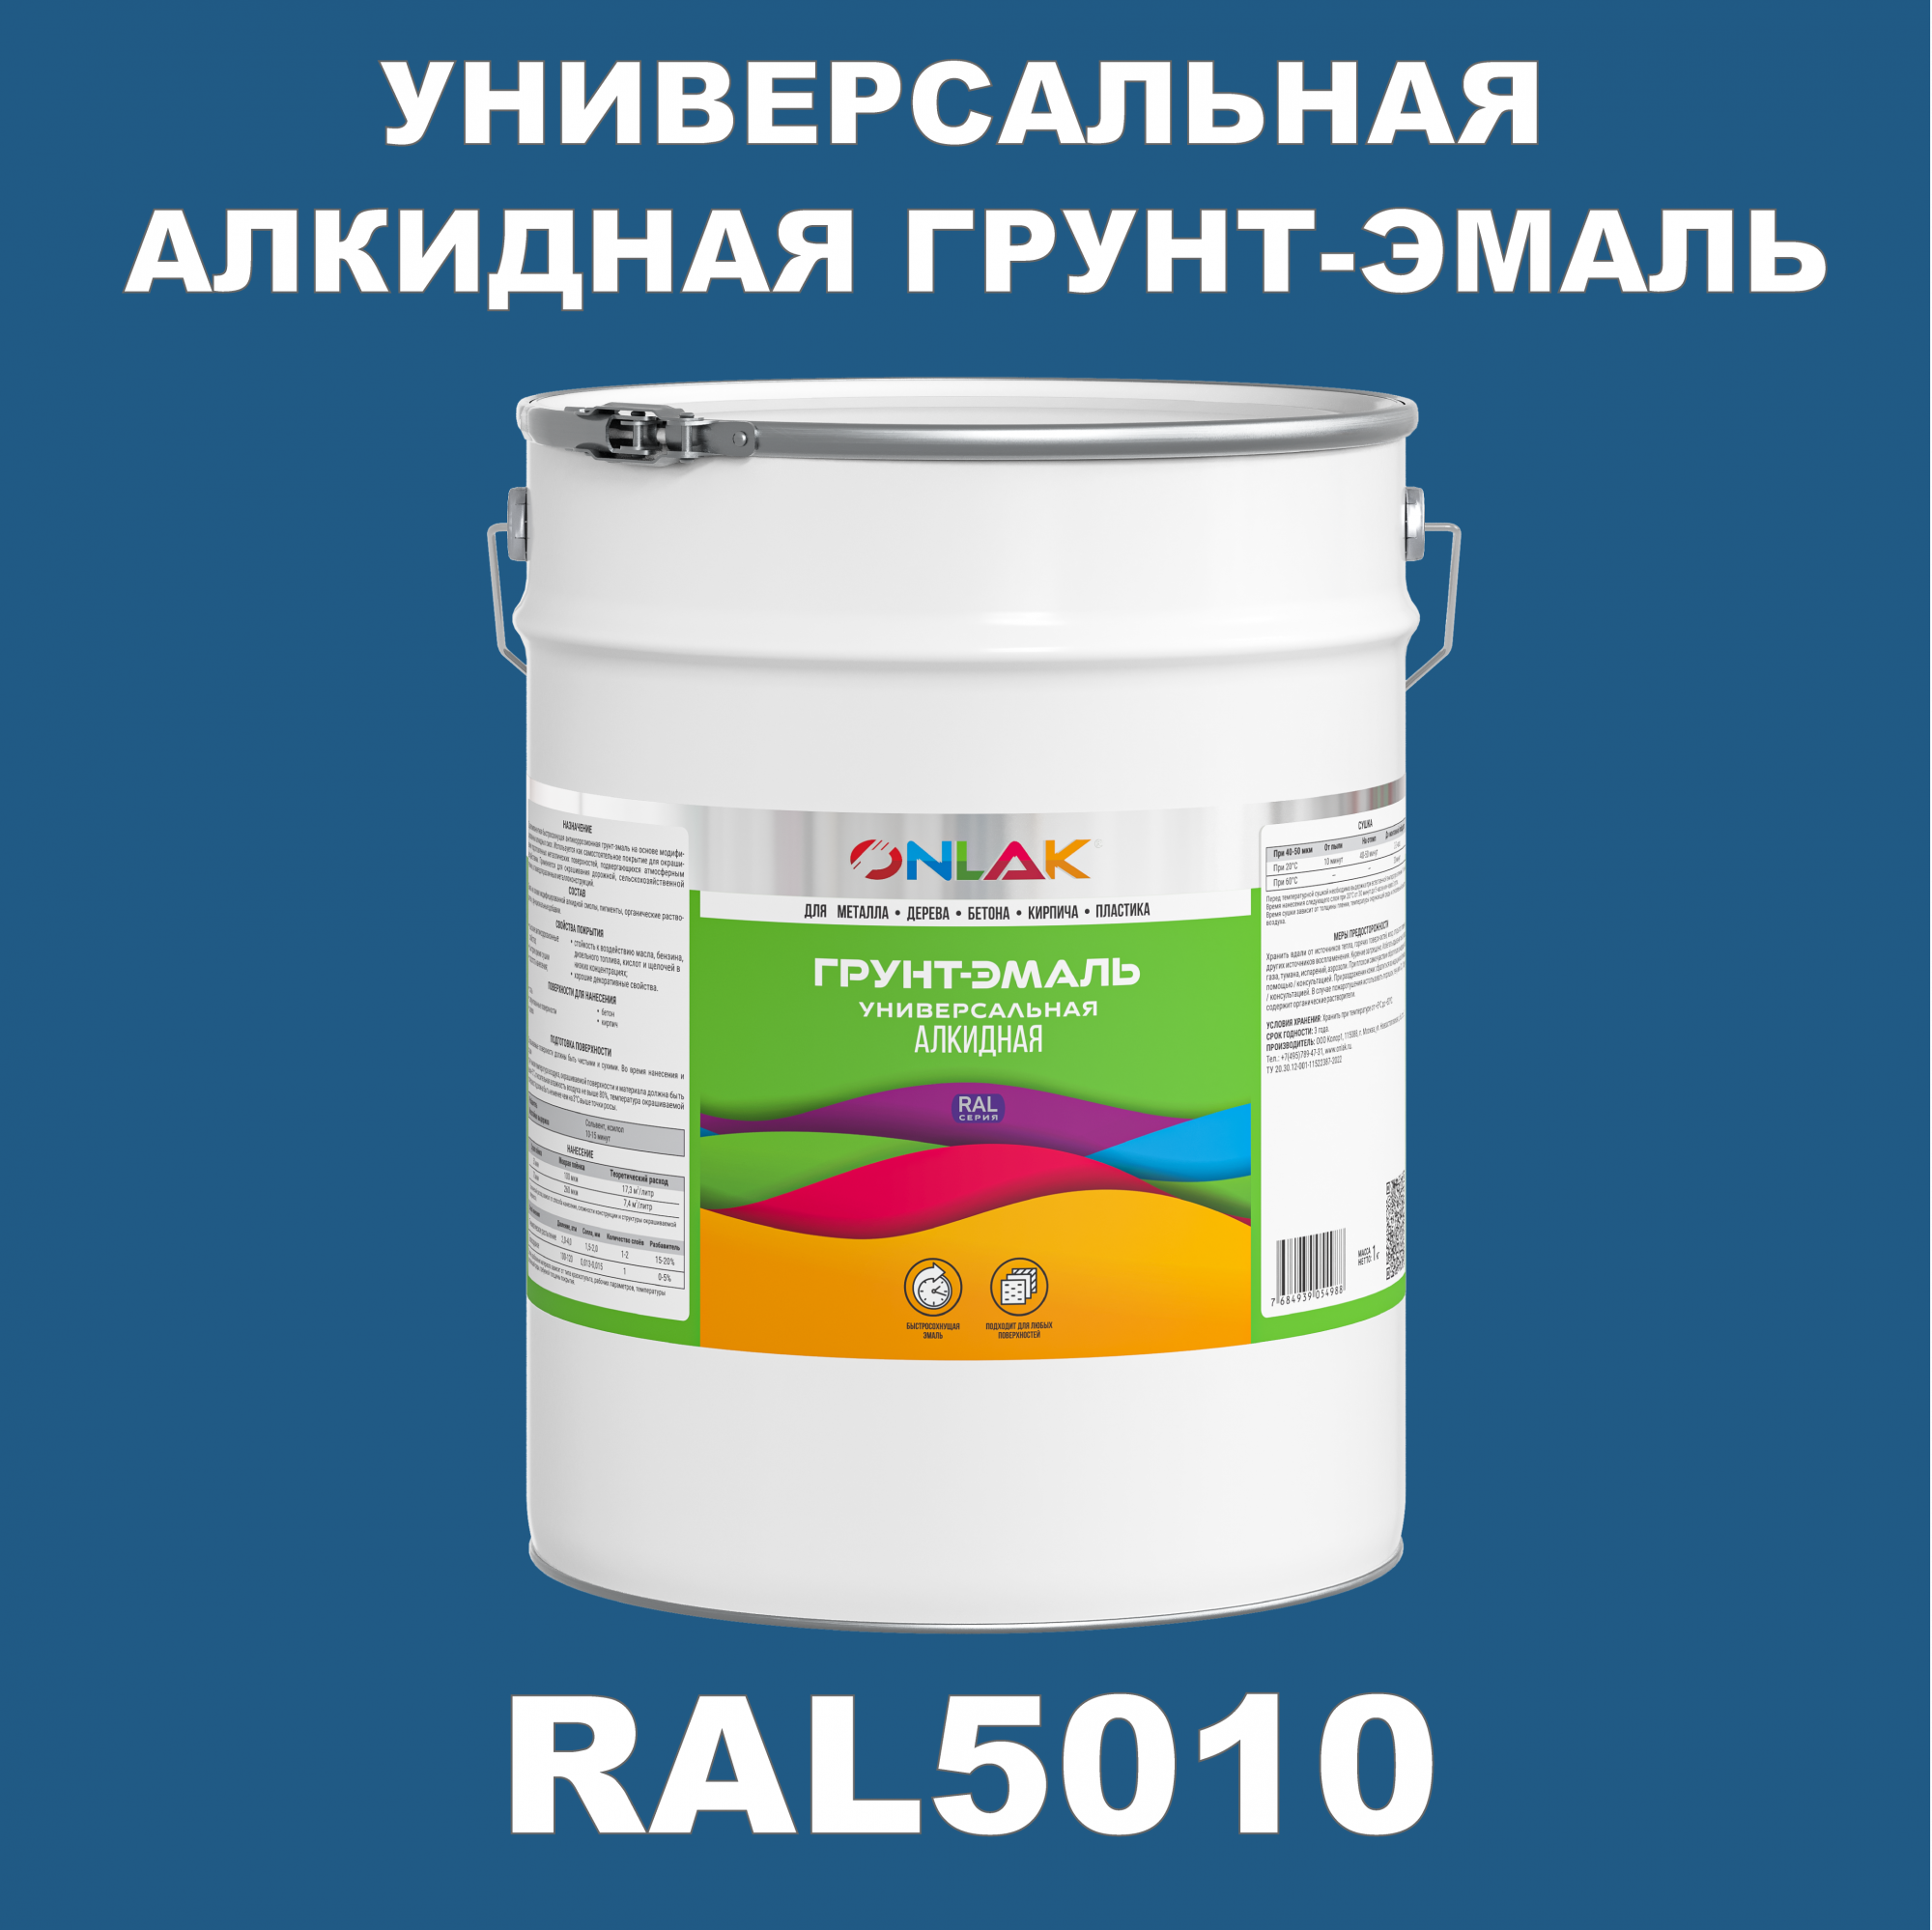 Грунт-эмаль ONLAK 1К RAL5010 антикоррозионная алкидная по металлу по ржавчине 20 кг